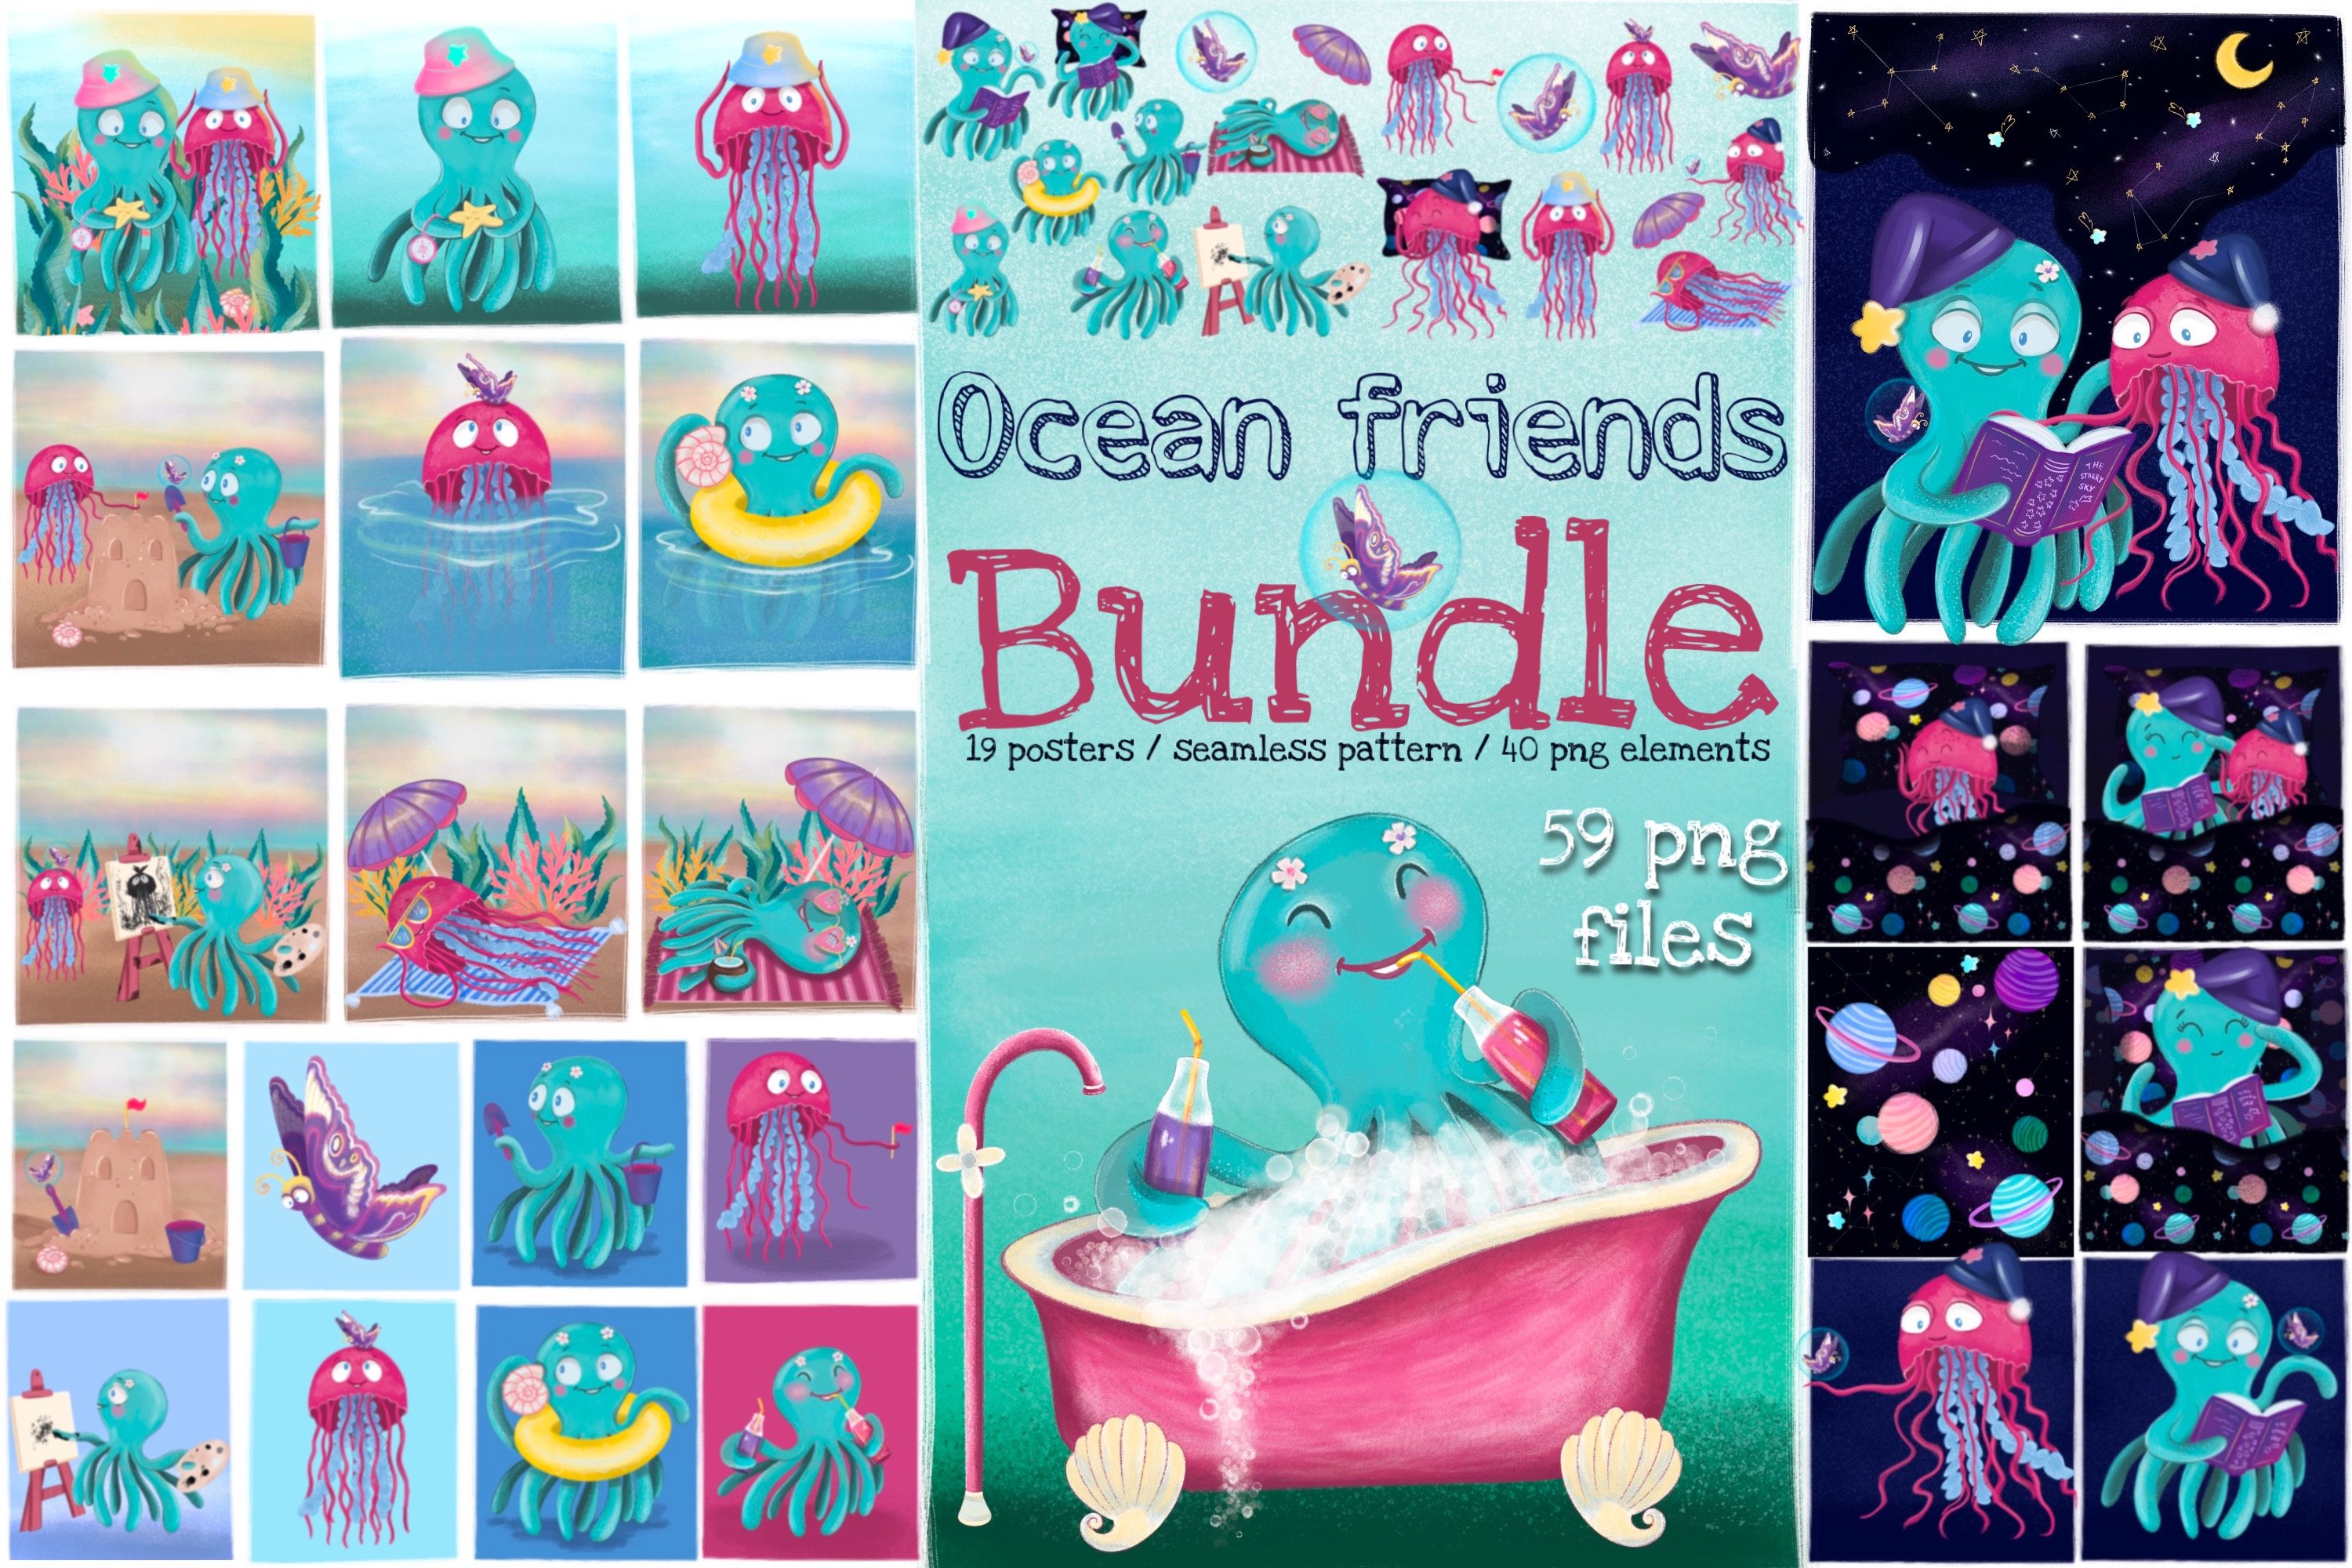 手绘水彩可爱海洋动物水母章鱼插画素材 Ocean Frien